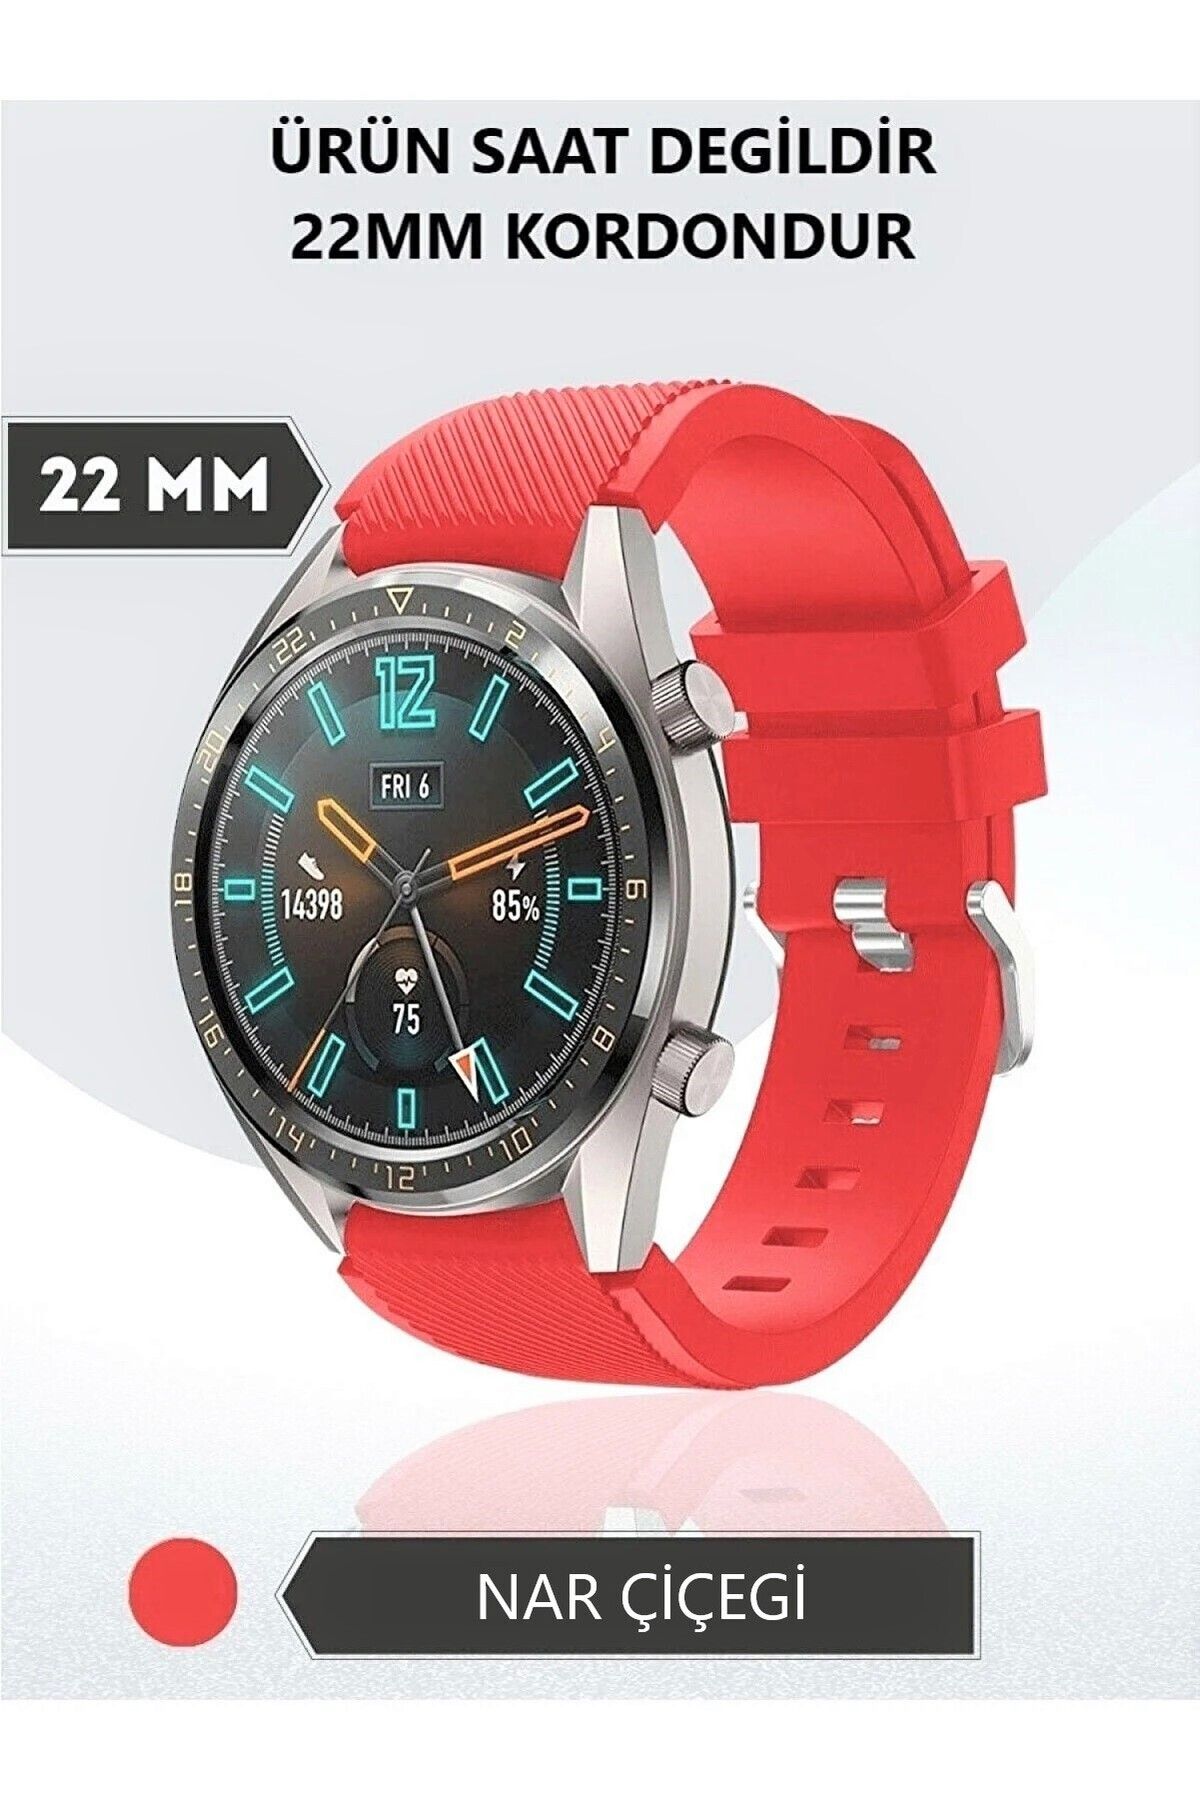 AQUA AKSESUAR Samsung Galaxy Watch 3 (45MM) - Watch 1 (46MM) Uyumlu Çizgi Desenli Silikon Kordon Kayış